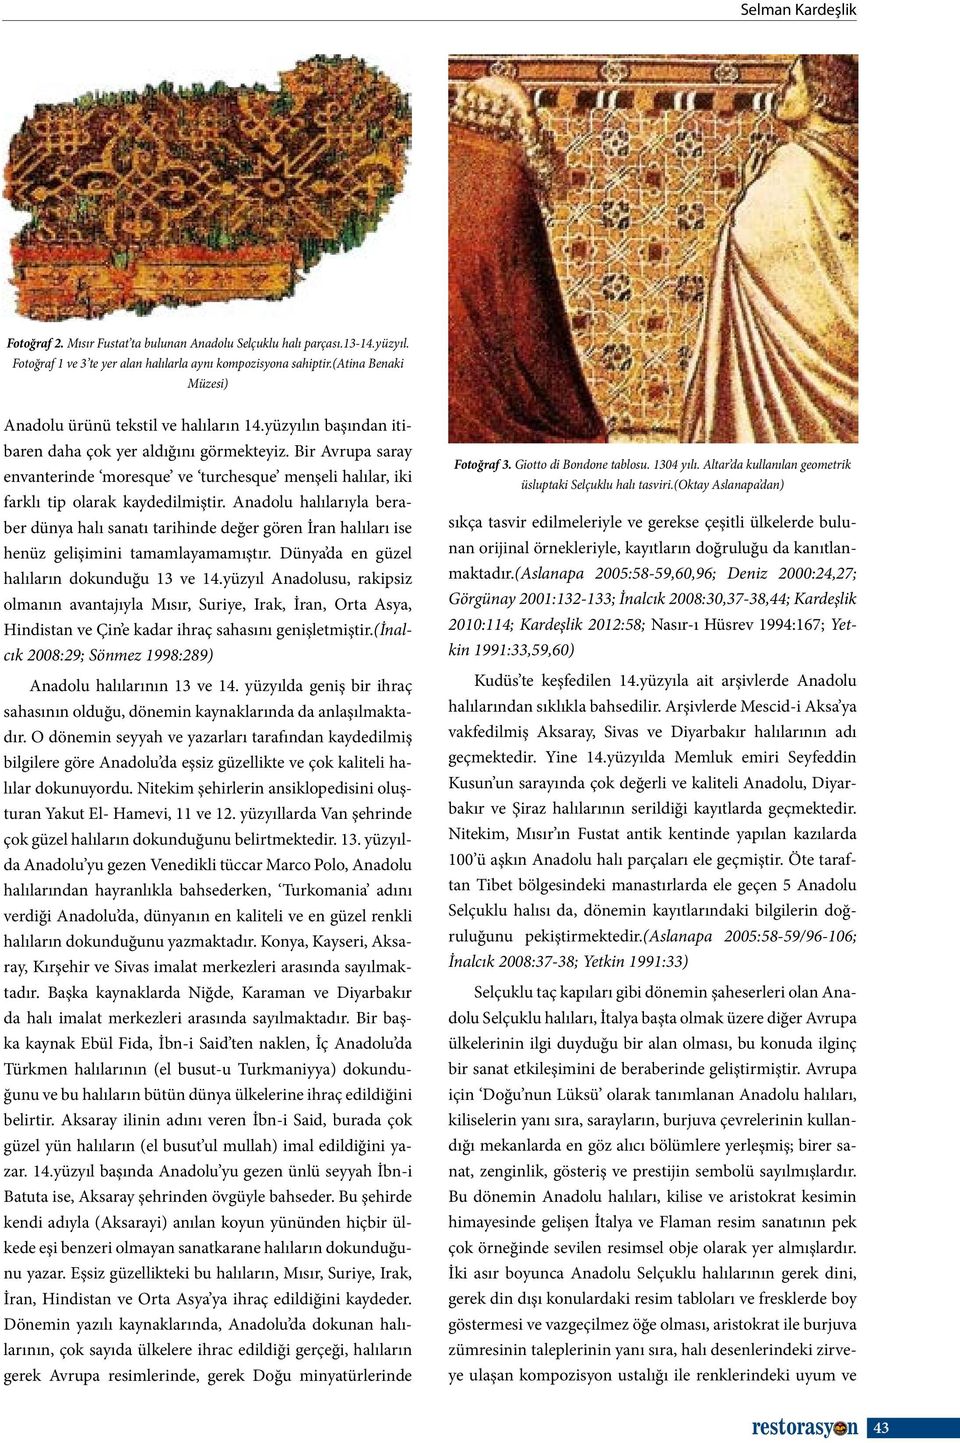 Bir Avrupa saray envanterinde moresque ve turchesque menşeli halılar, iki farklı tip olarak kaydedilmiştir.